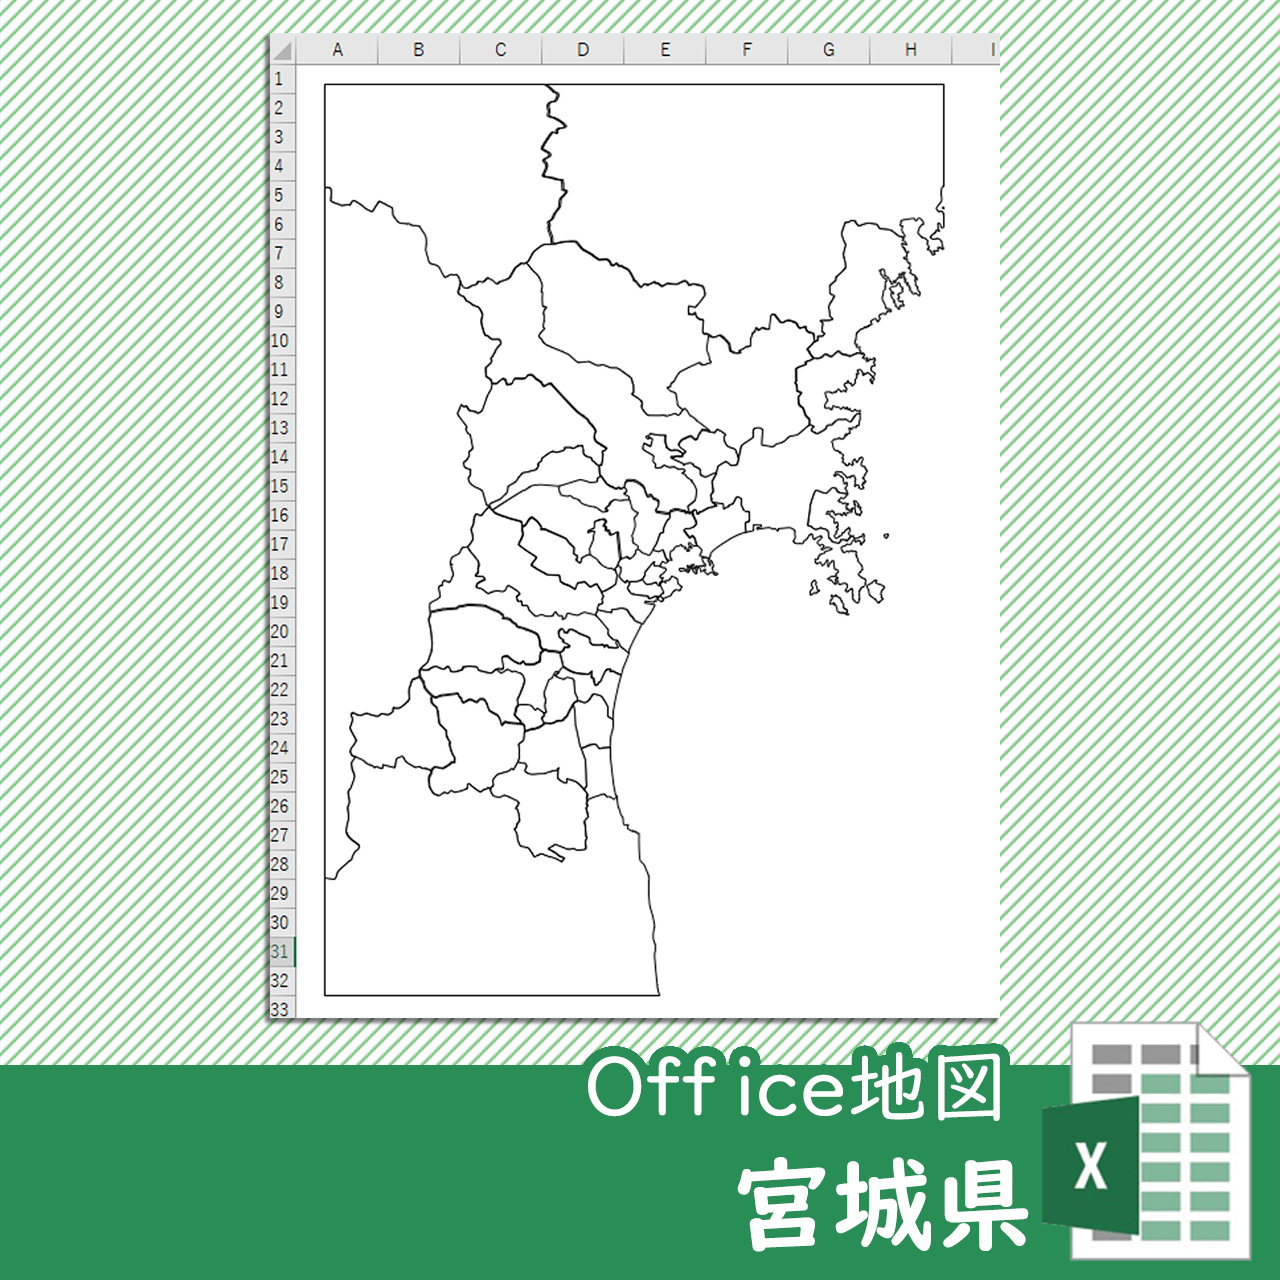 宮城県のOffice地図のサムネイル